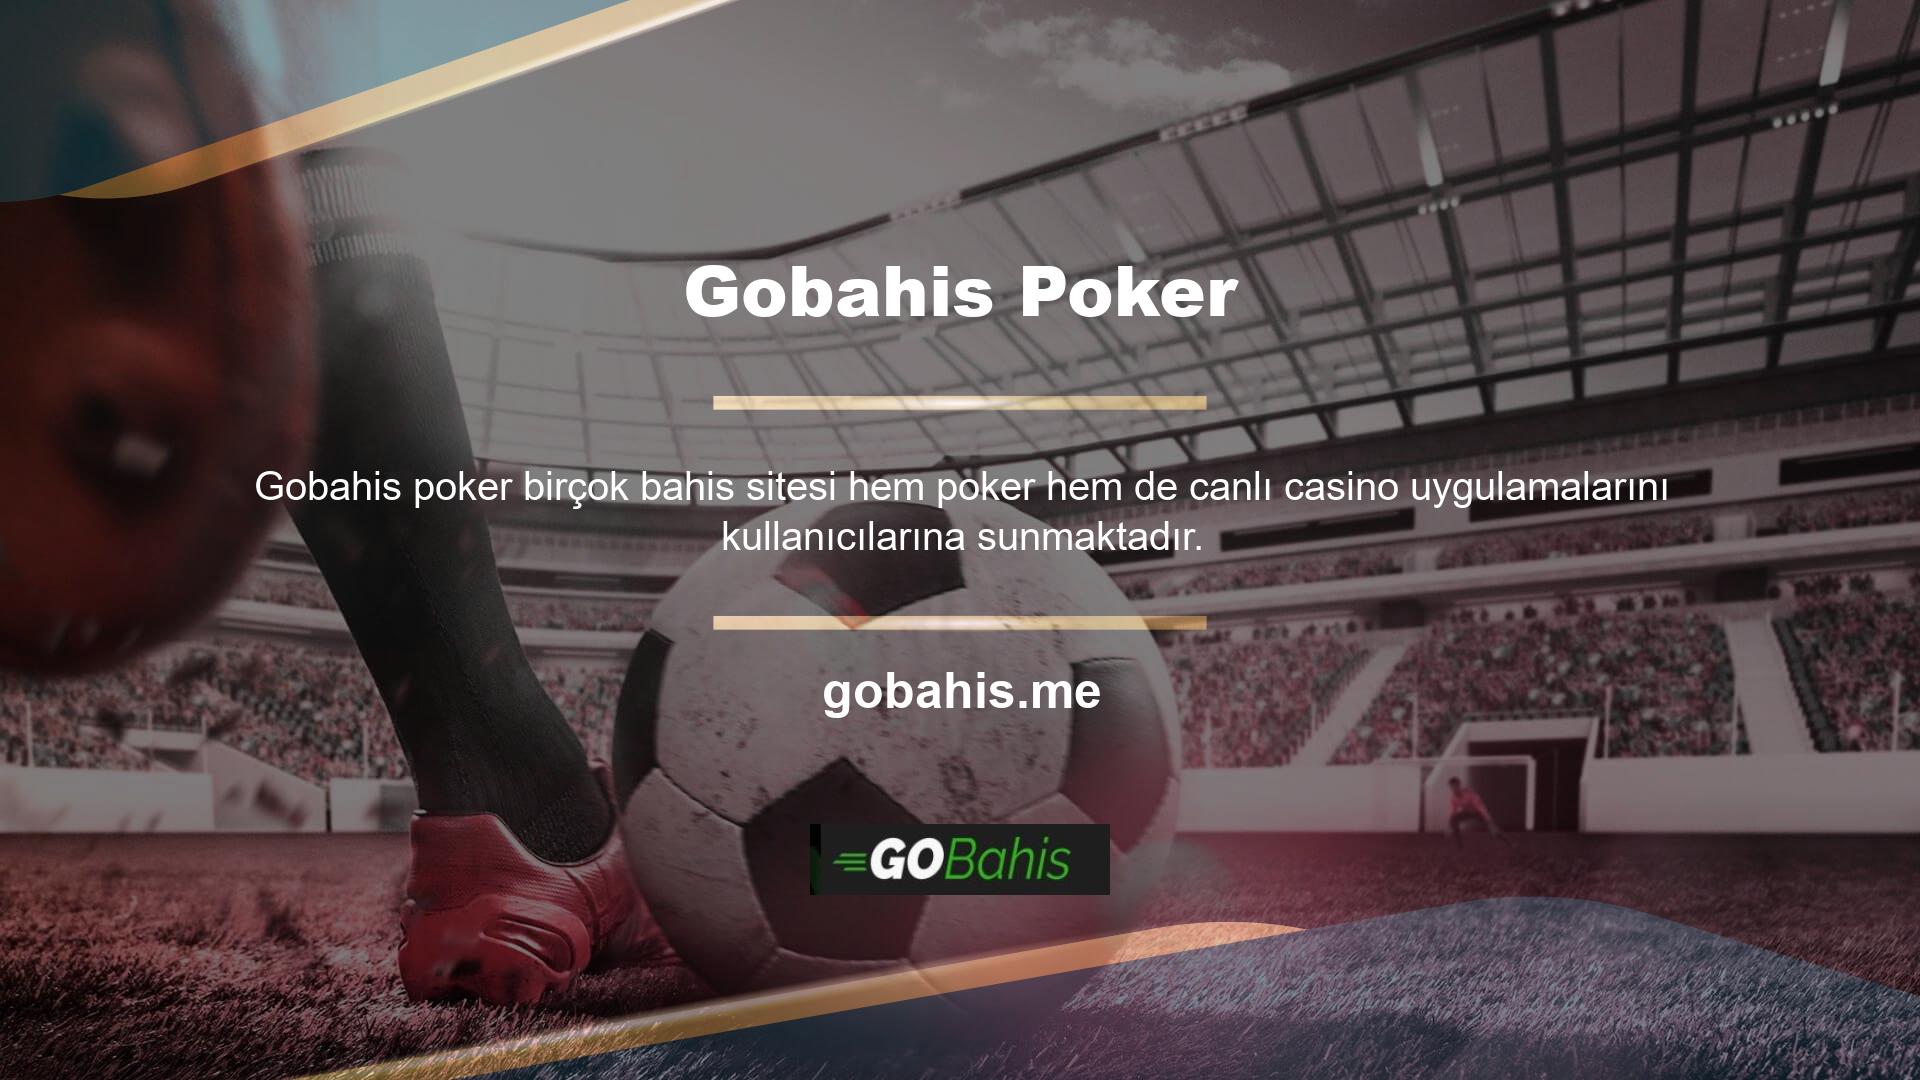 Bu bakımdan bu site size başka hiçbir uygulamada değil, Gobahis poker giriş sayfasının ana sayfasında canlı casinoda poker oynama fırsatını sunarak üye olma ayrıcalığına sahiptir